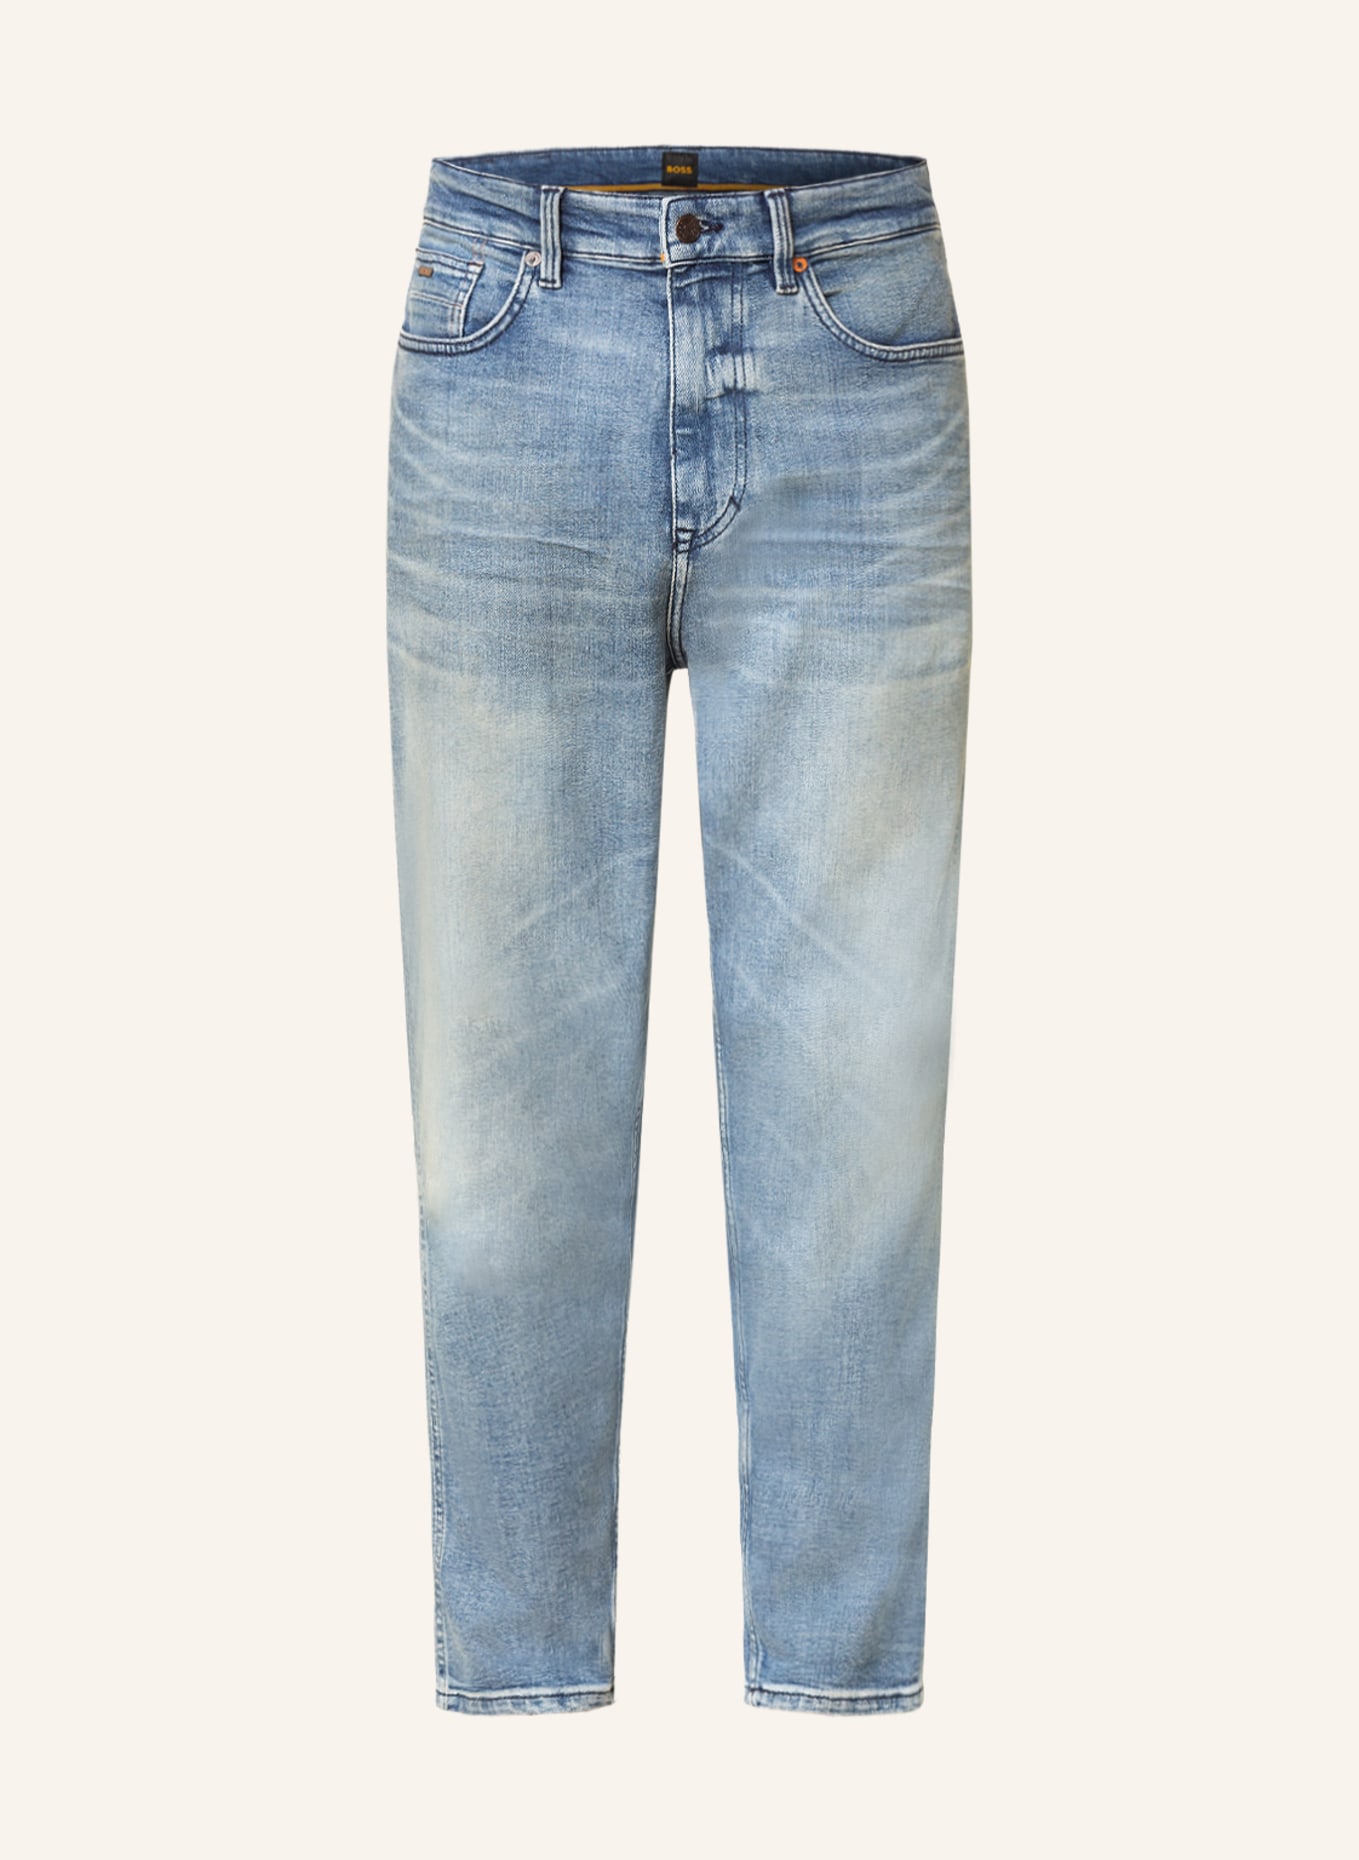 BOSS Jeans TATUM Tapered Fit, Farbe: 433 BRIGHT BLUE (Bild 1)